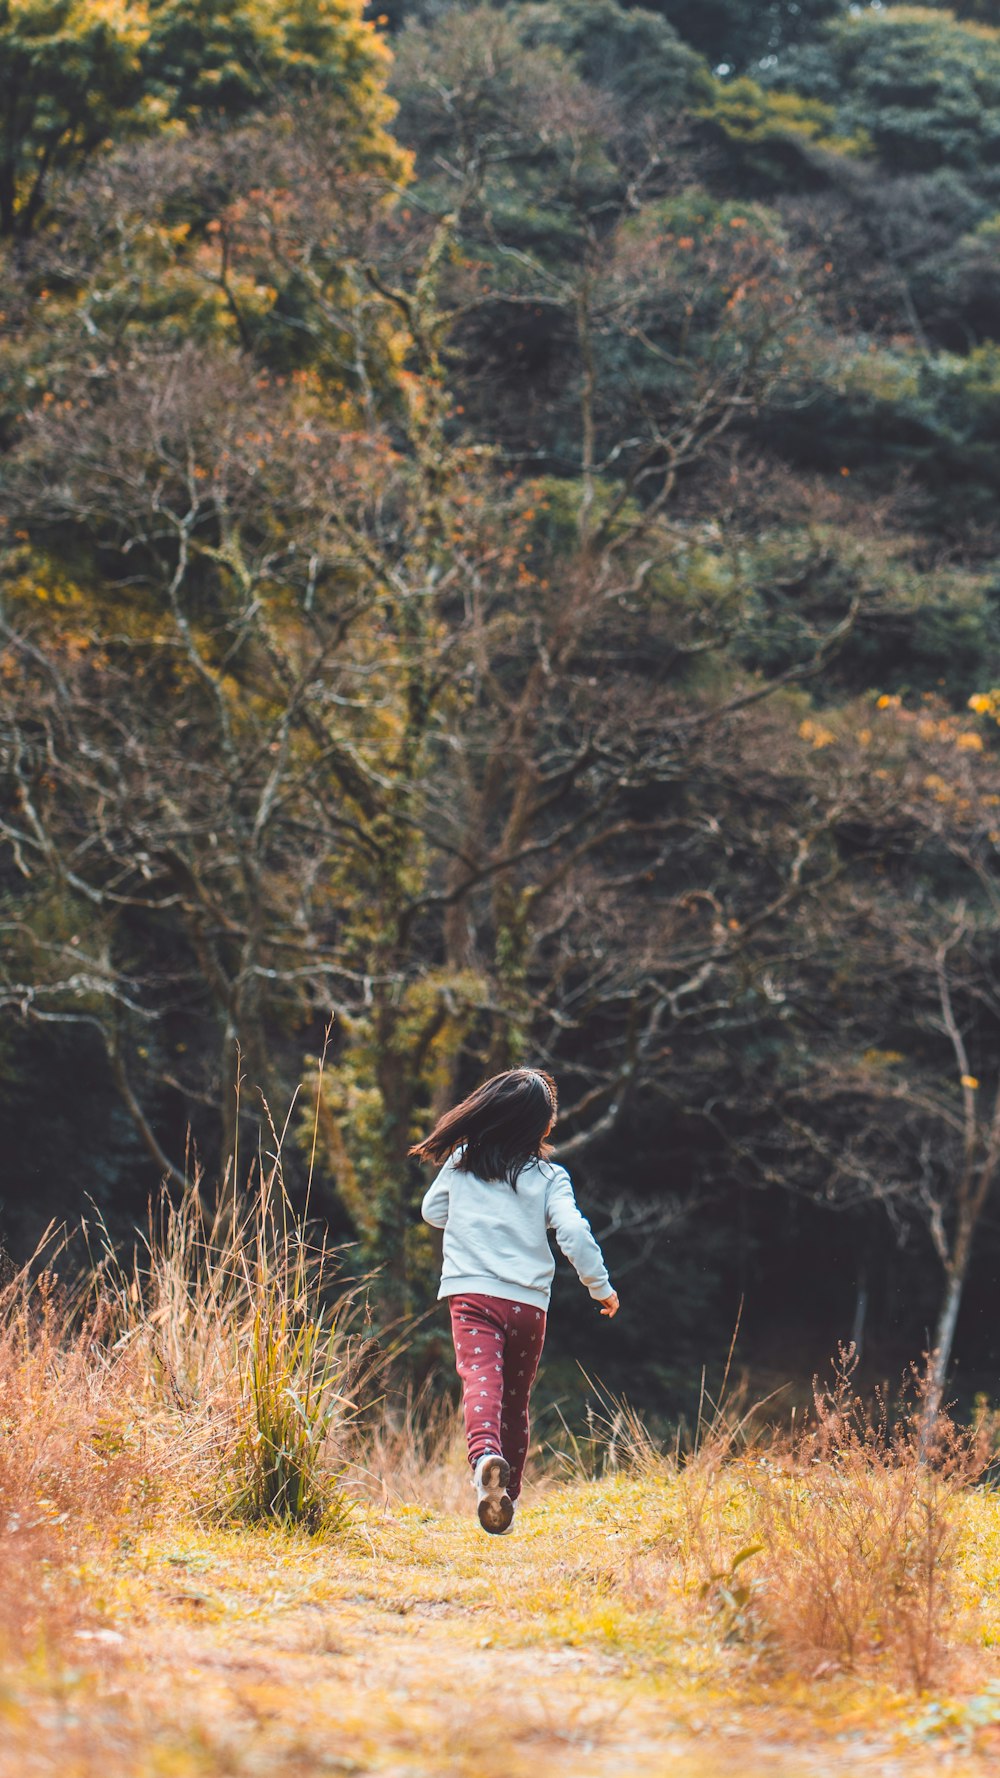 Una niña corriendo por un campo con árboles en el fondo